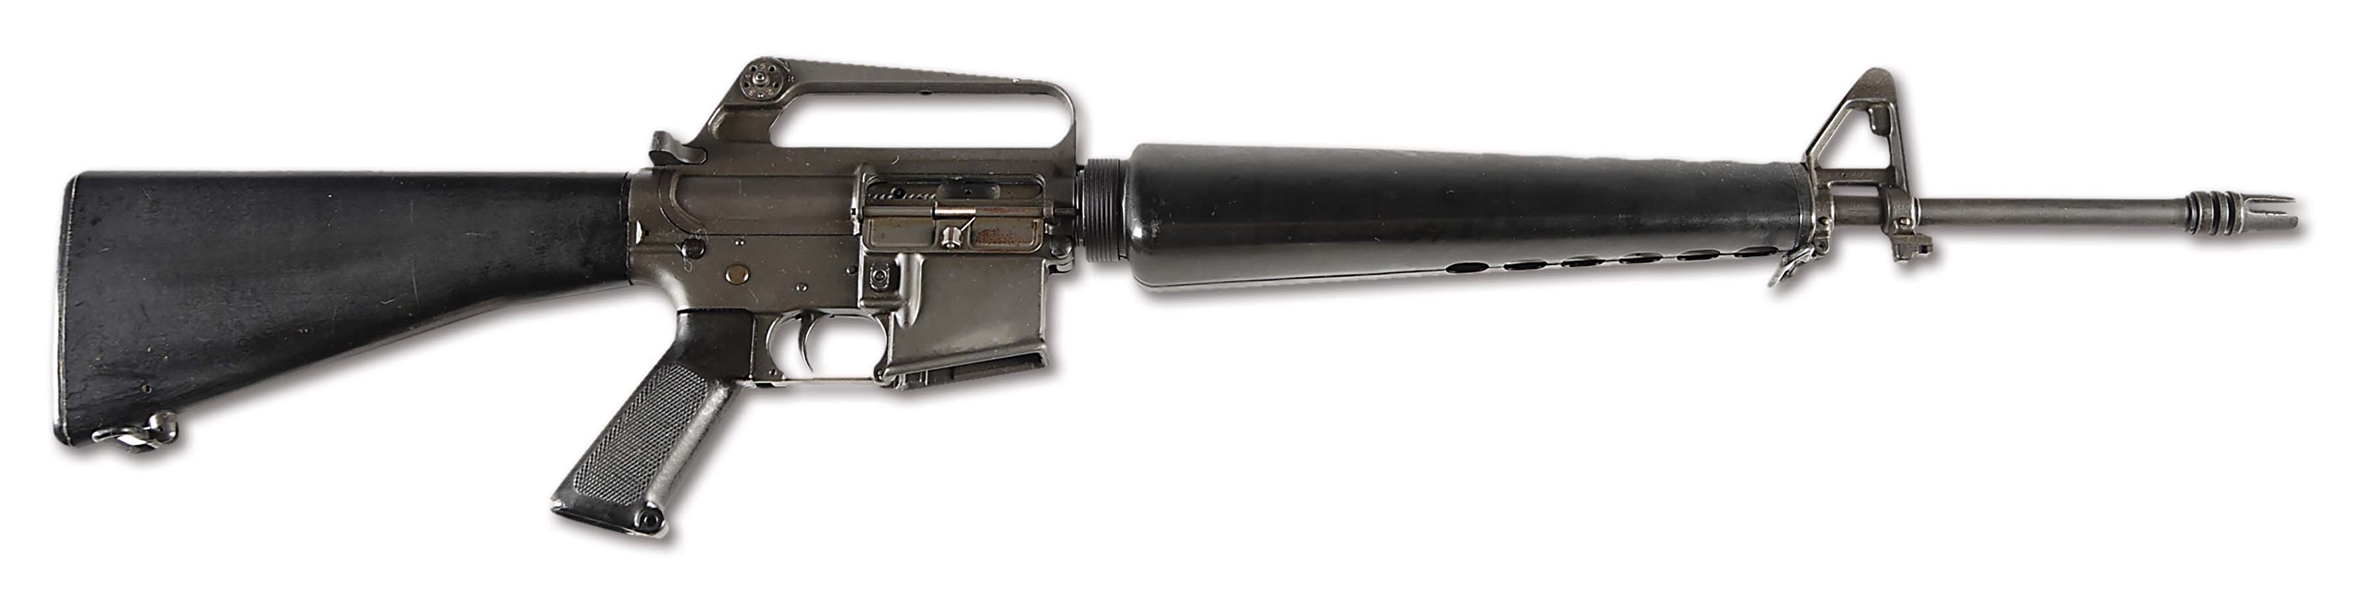 (N) FANTASTIC 1960S VINTAGE ORIGINAL COLT AR-15 MODEL 614 SPECIMEN OF THE M16 MACHINE GUN (CURIO AND RELIC).